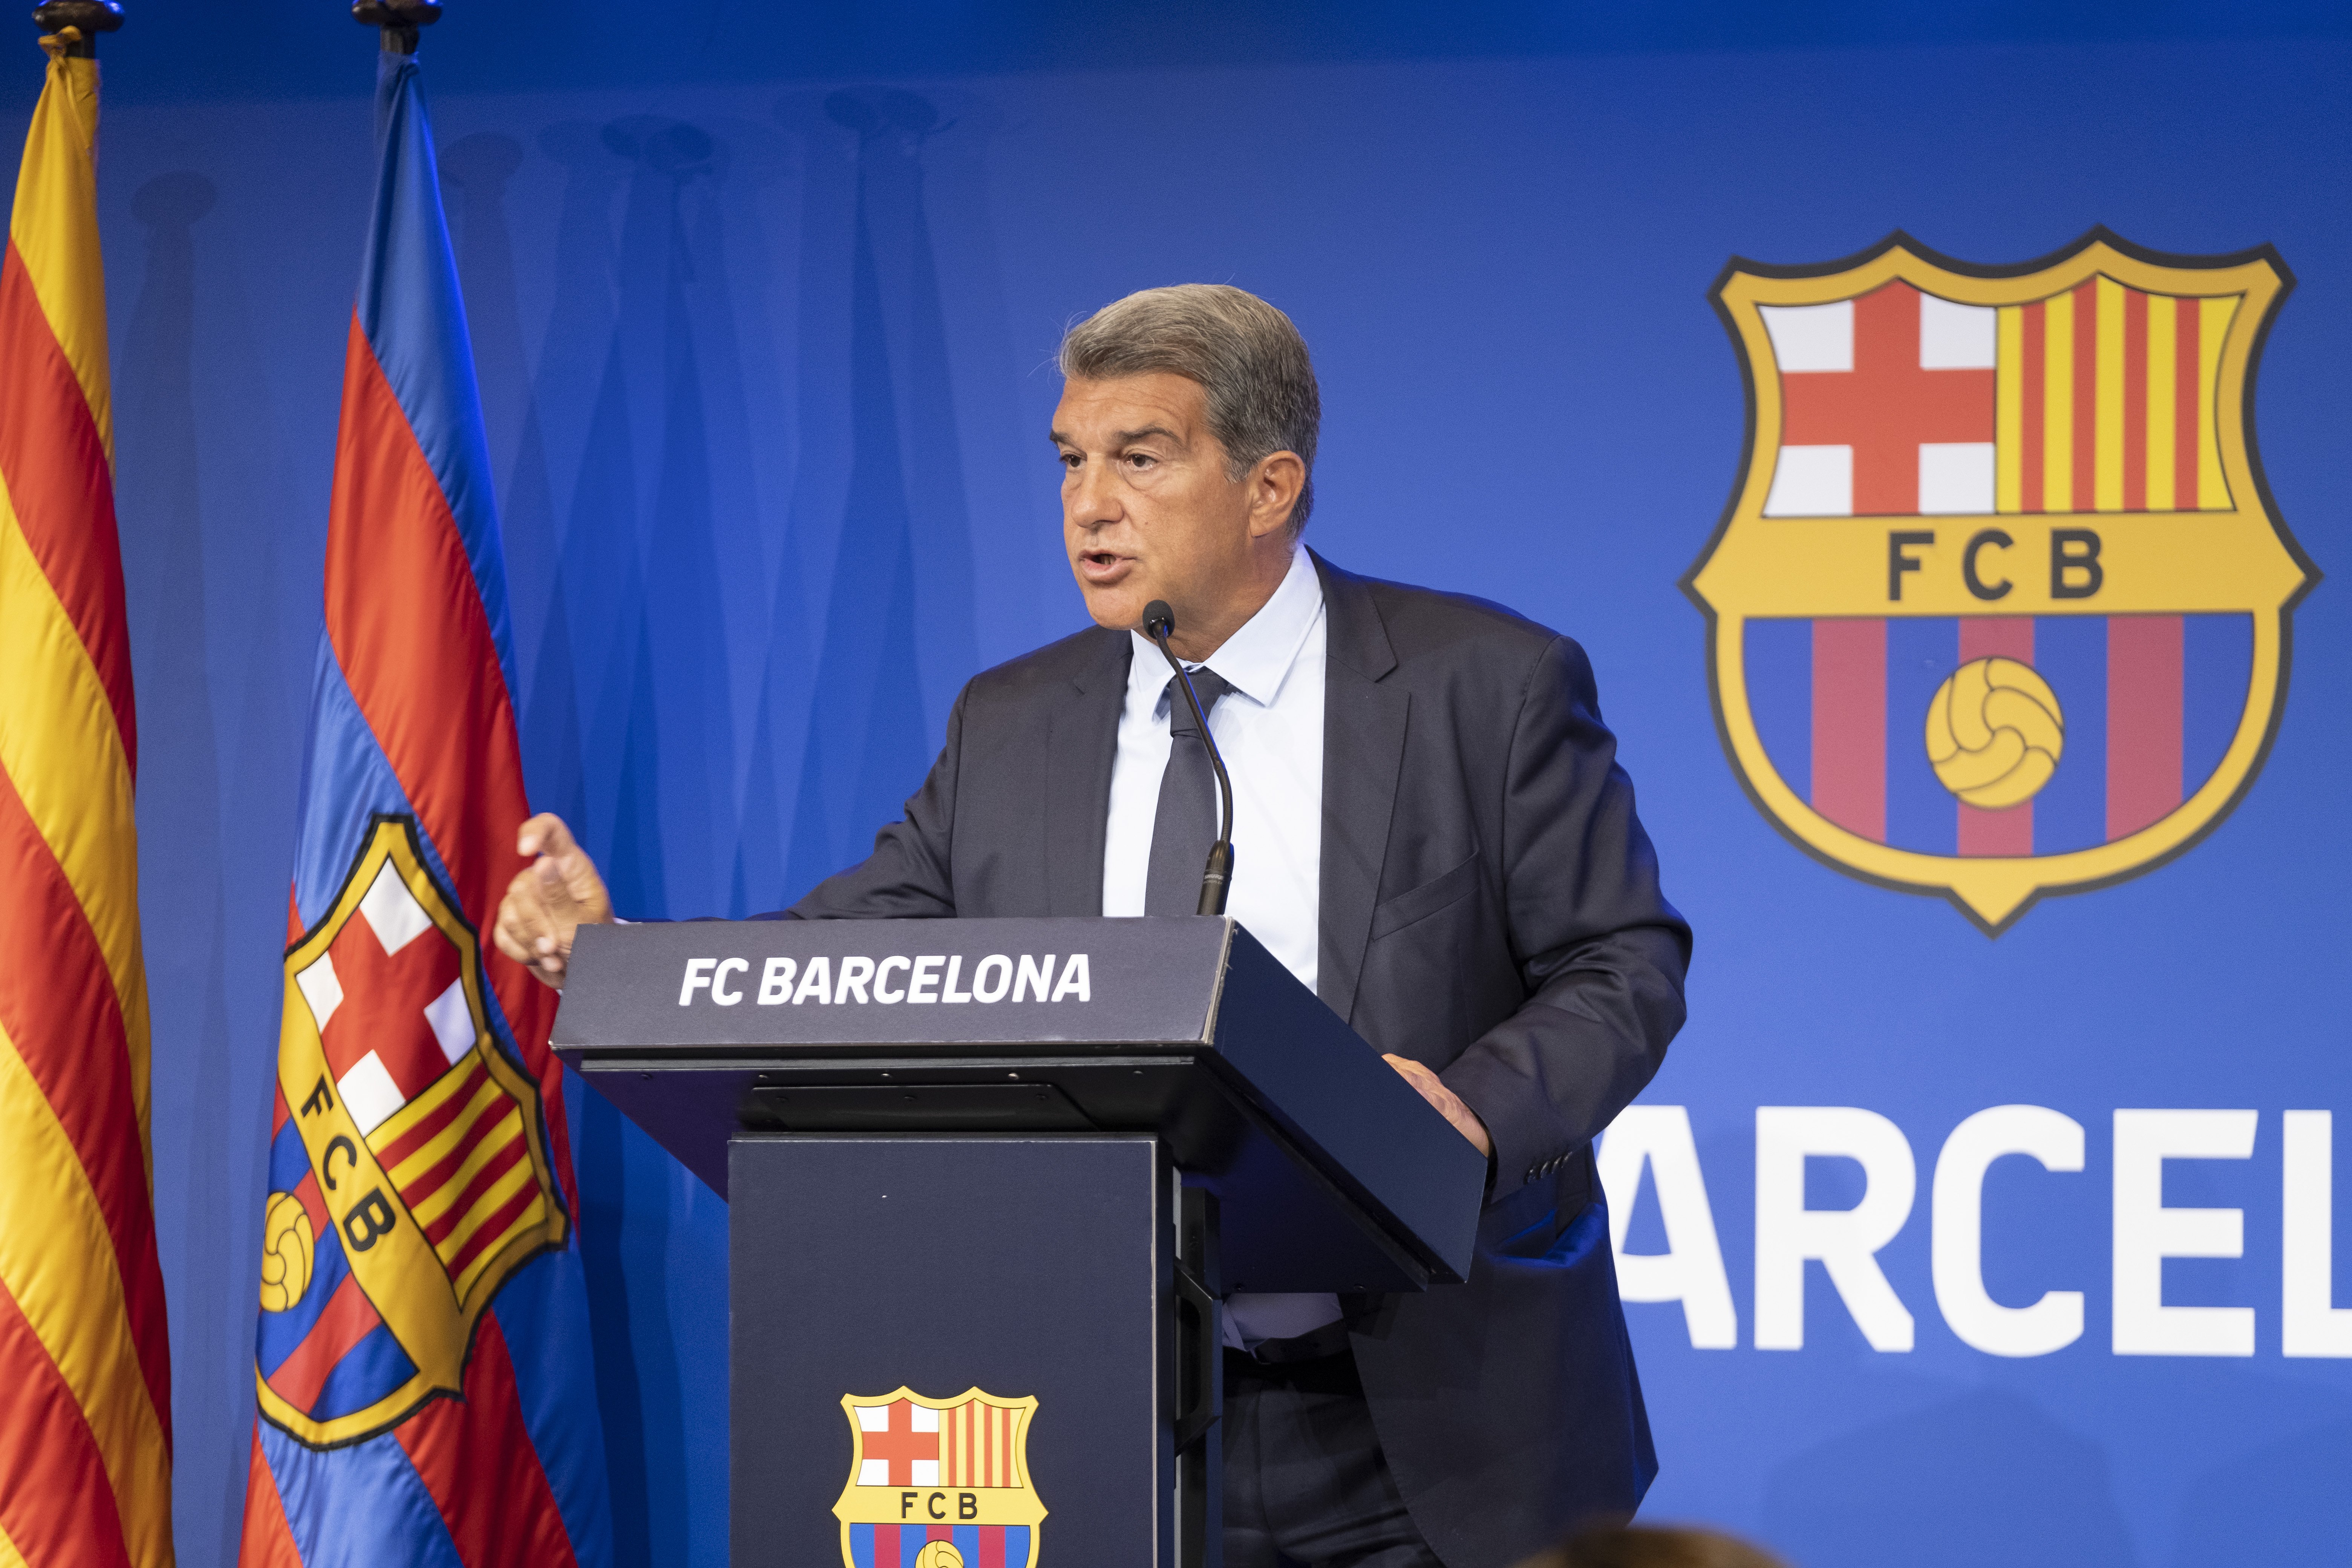 El Barça formaliza un crédito de 595 millones de euros